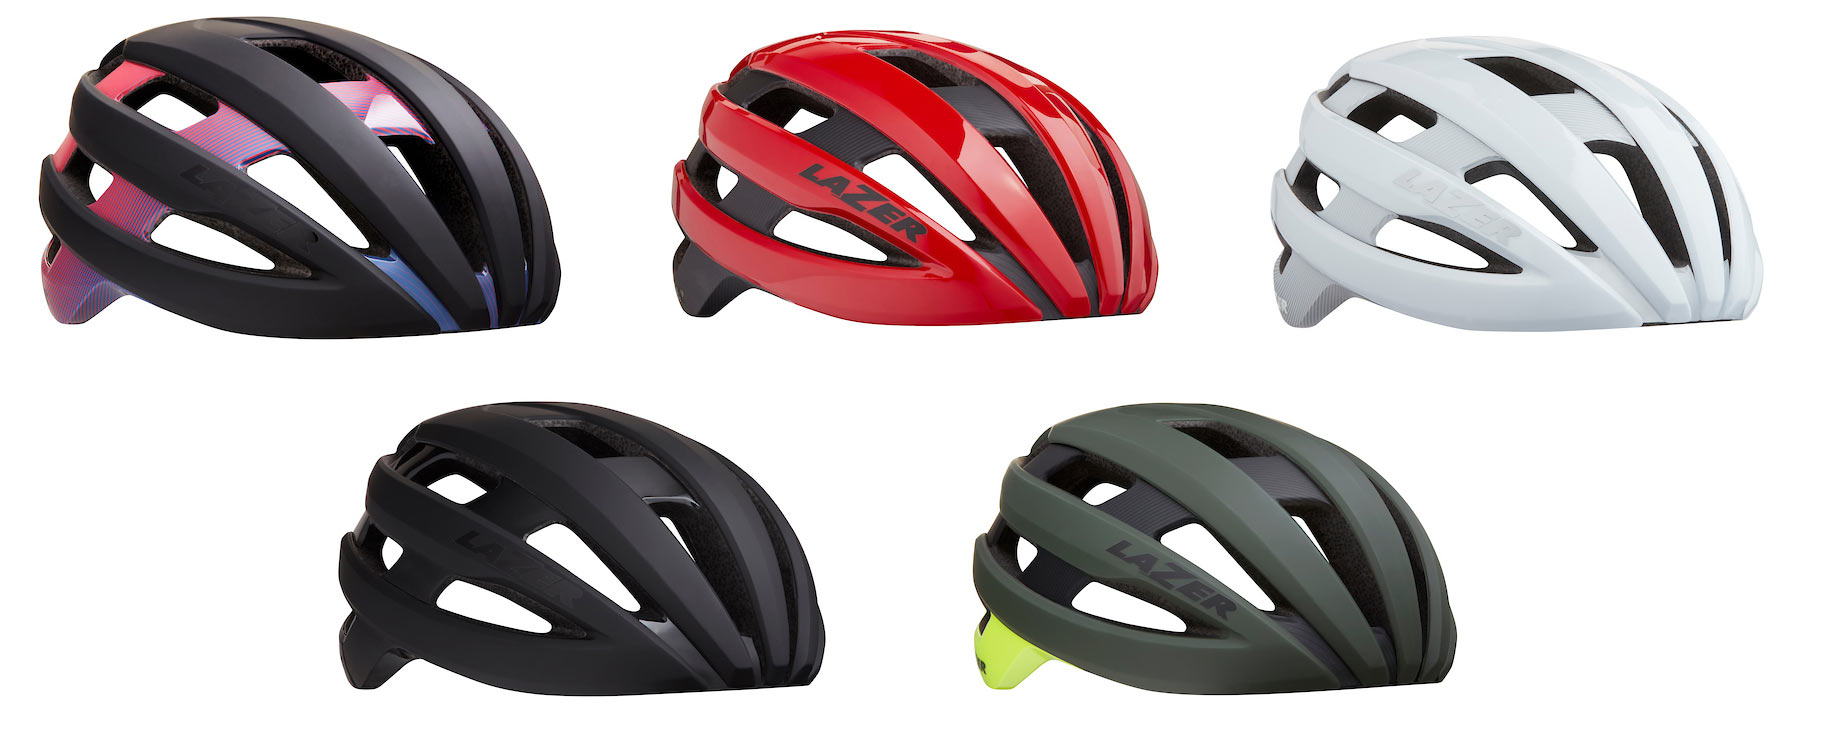 lazer-sphere-road-bike-helmet-details-and-colors-2.jpg